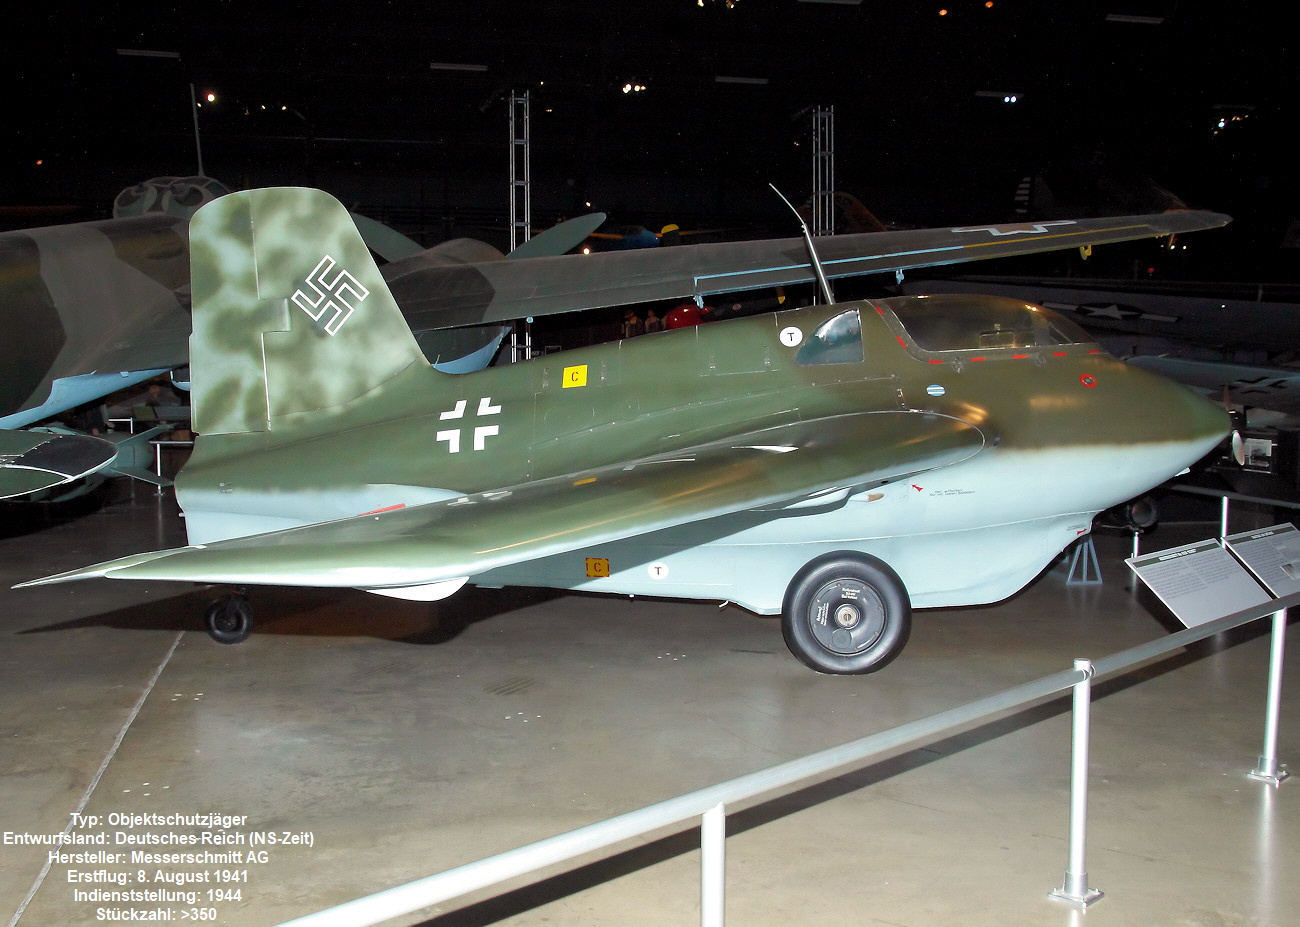 Messerschmitt Me 163B Komet - NS-Zeit